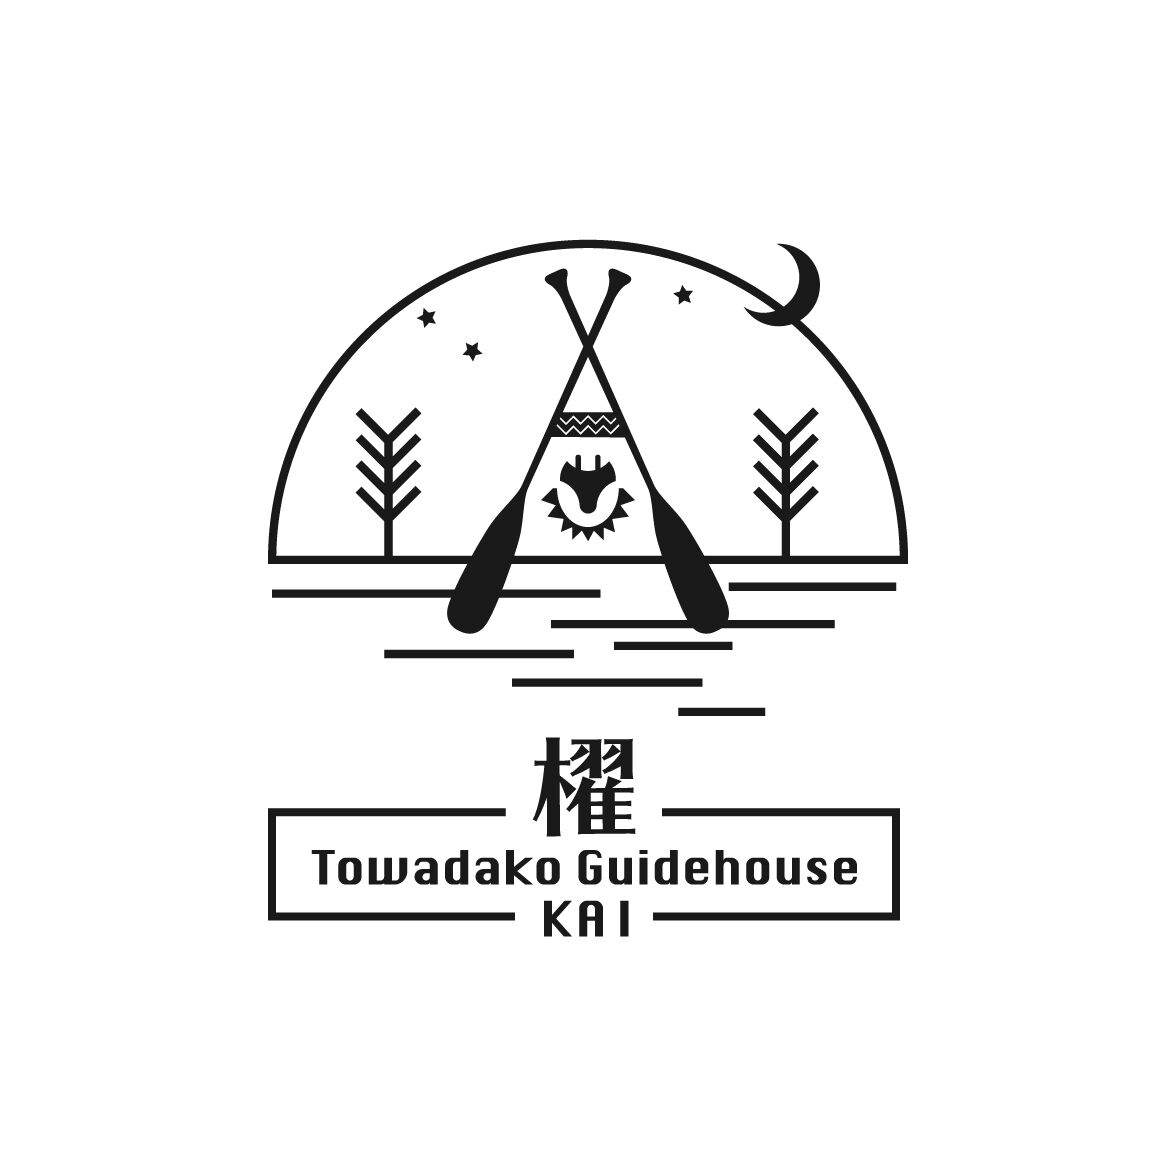 Towadako Guidehouse Kai